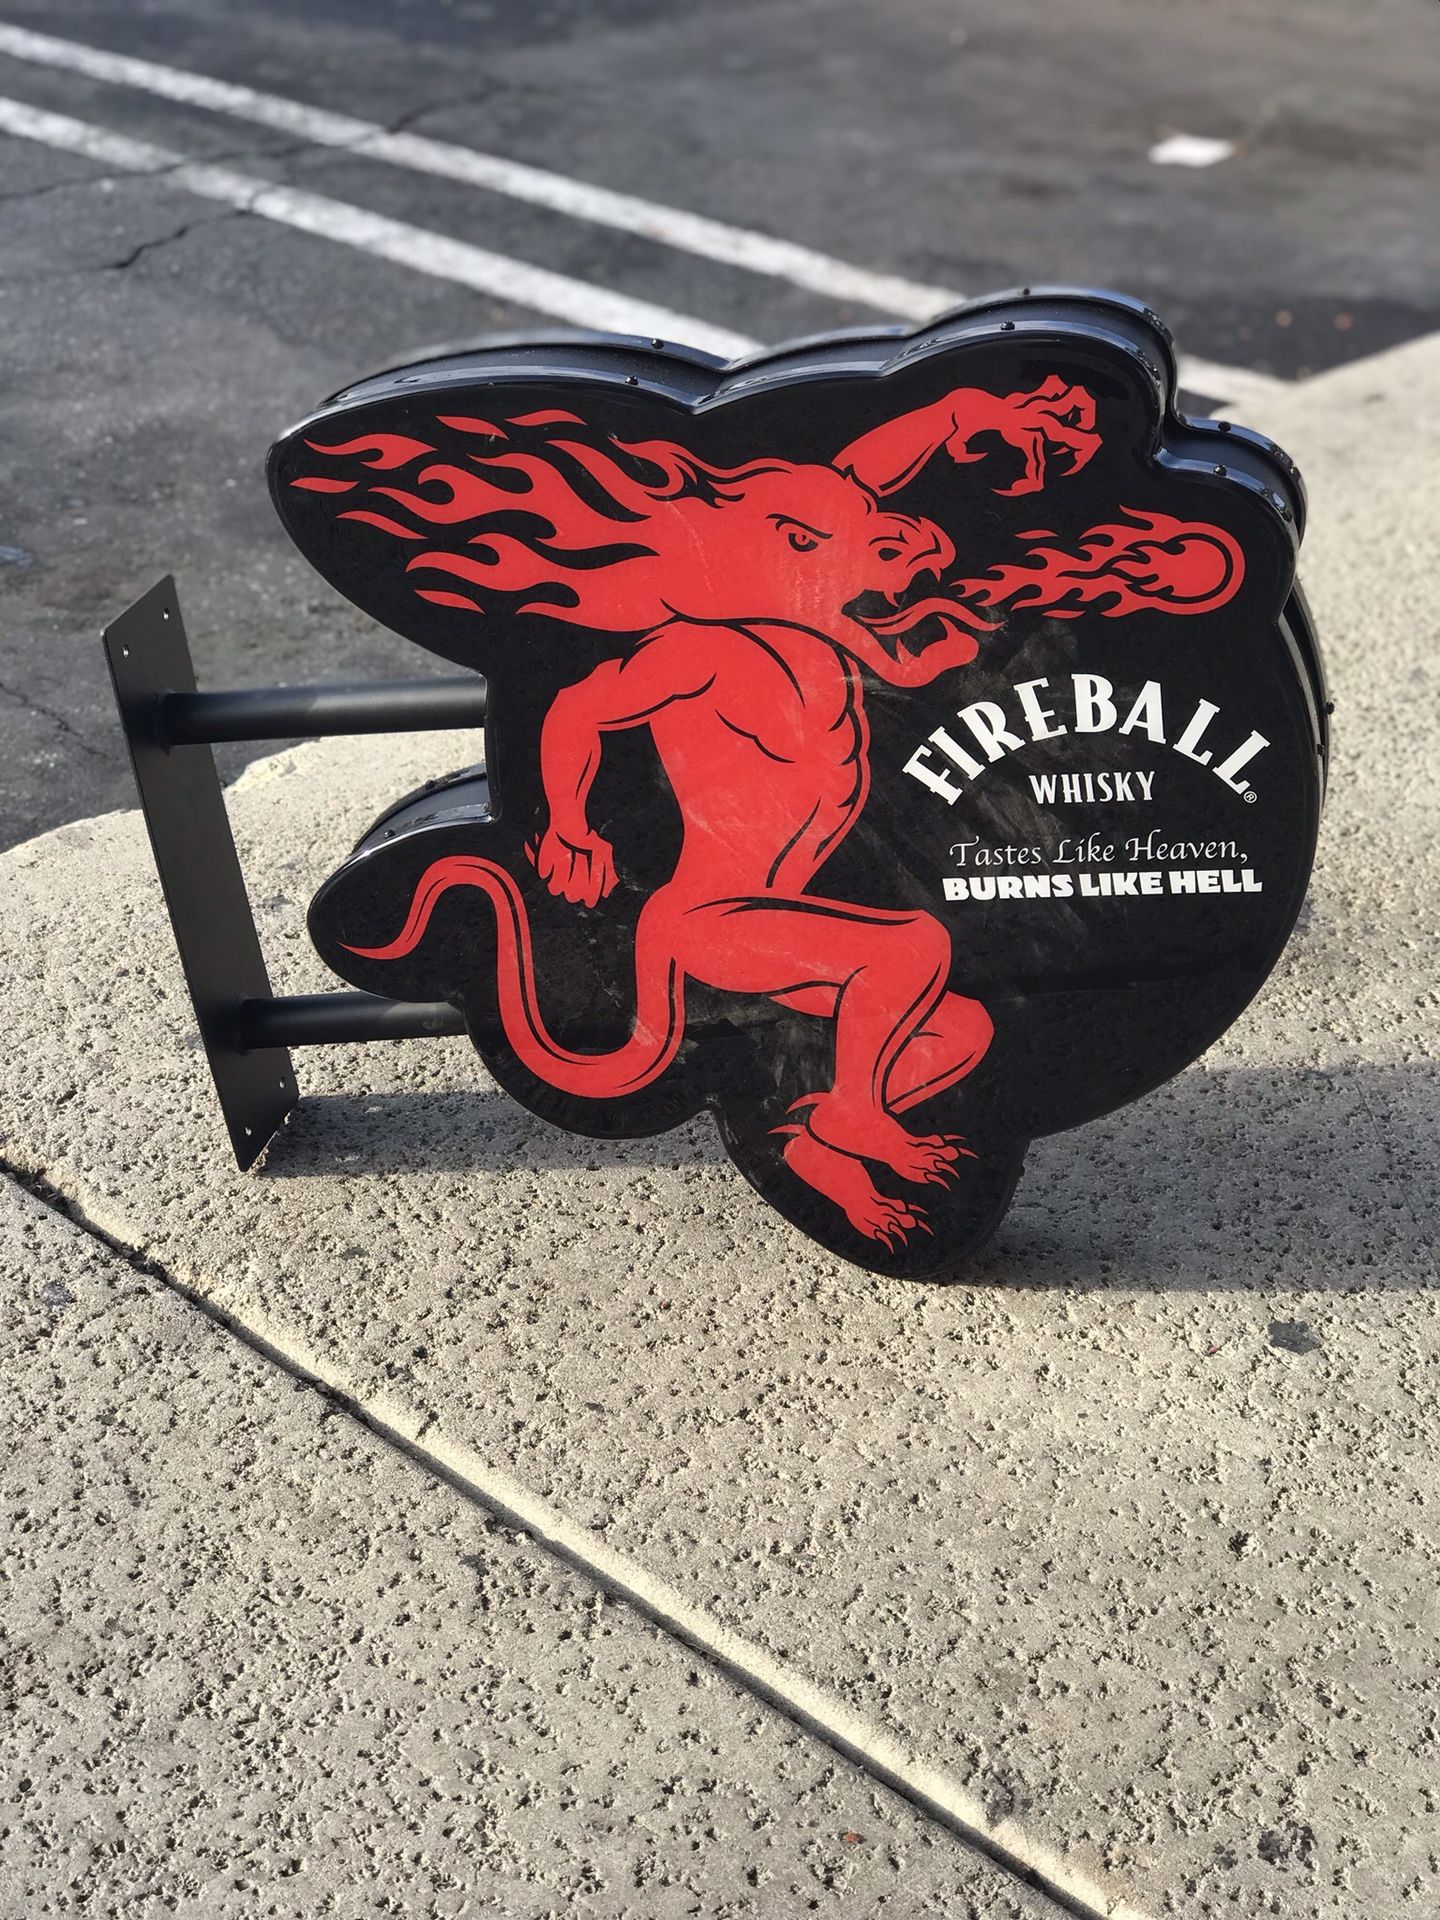 Fireball garage bar sign